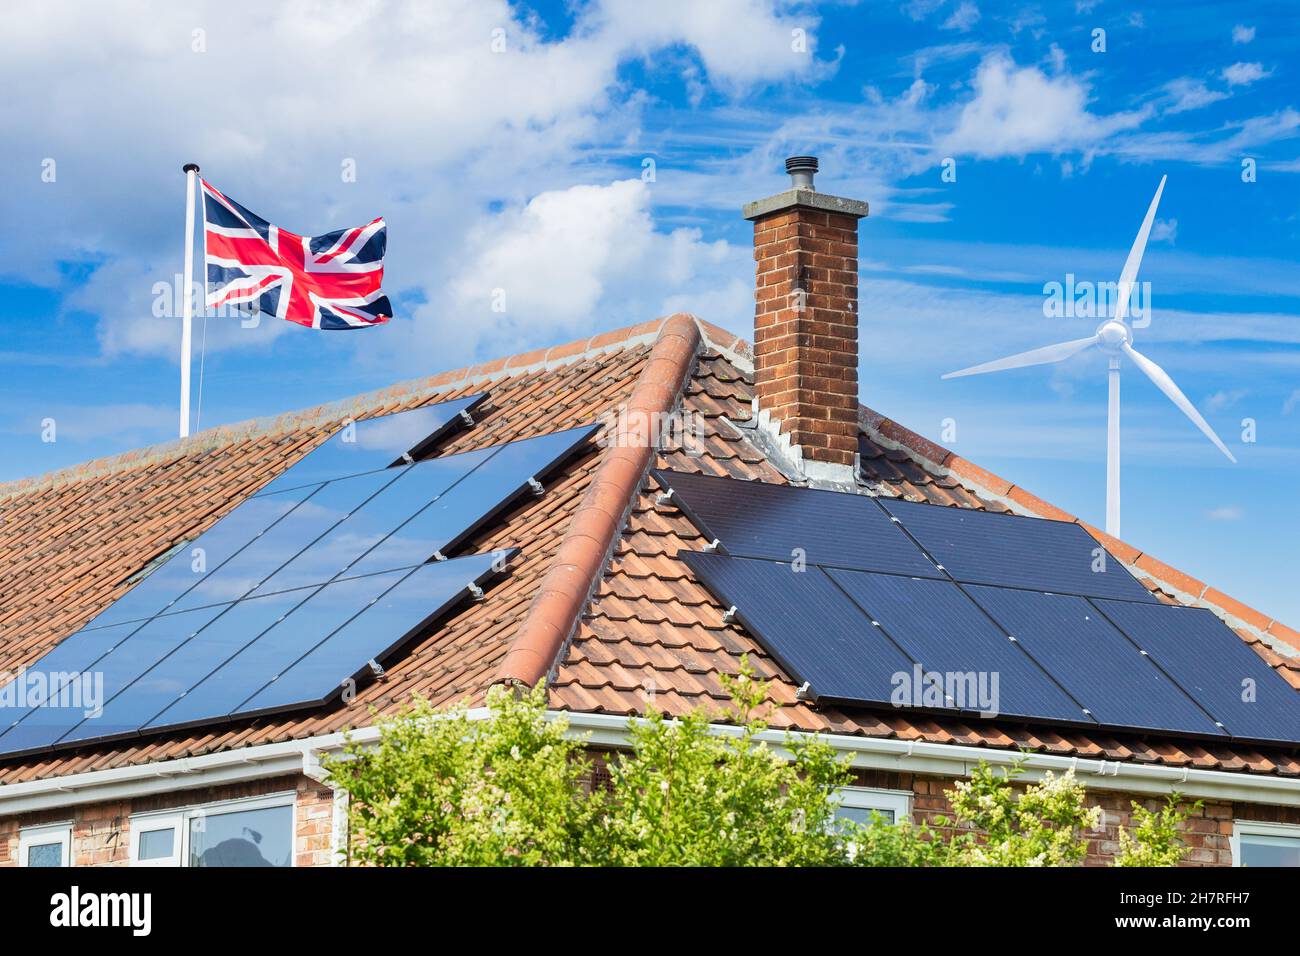 Solarmodule auf dem Hausdach in Großbritannien mit Windturbine. Solare, erneuerbare, grüne, saubere, alternative Energie. Haus, Haushalt Stromrechnungen ... Konzept Stockfoto